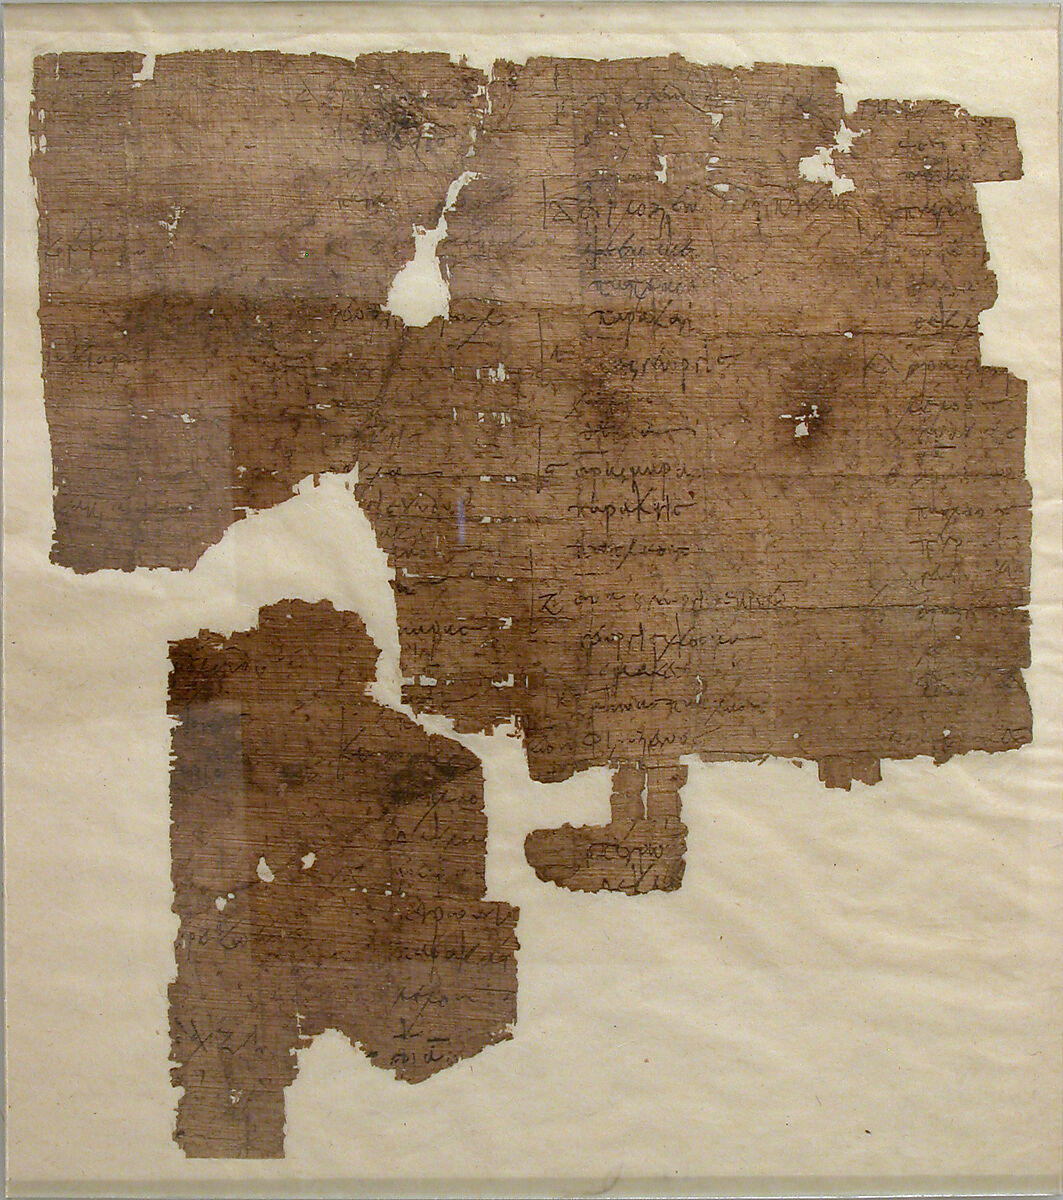 Papyrus Fragment, Papyrus, ink, Coptic 